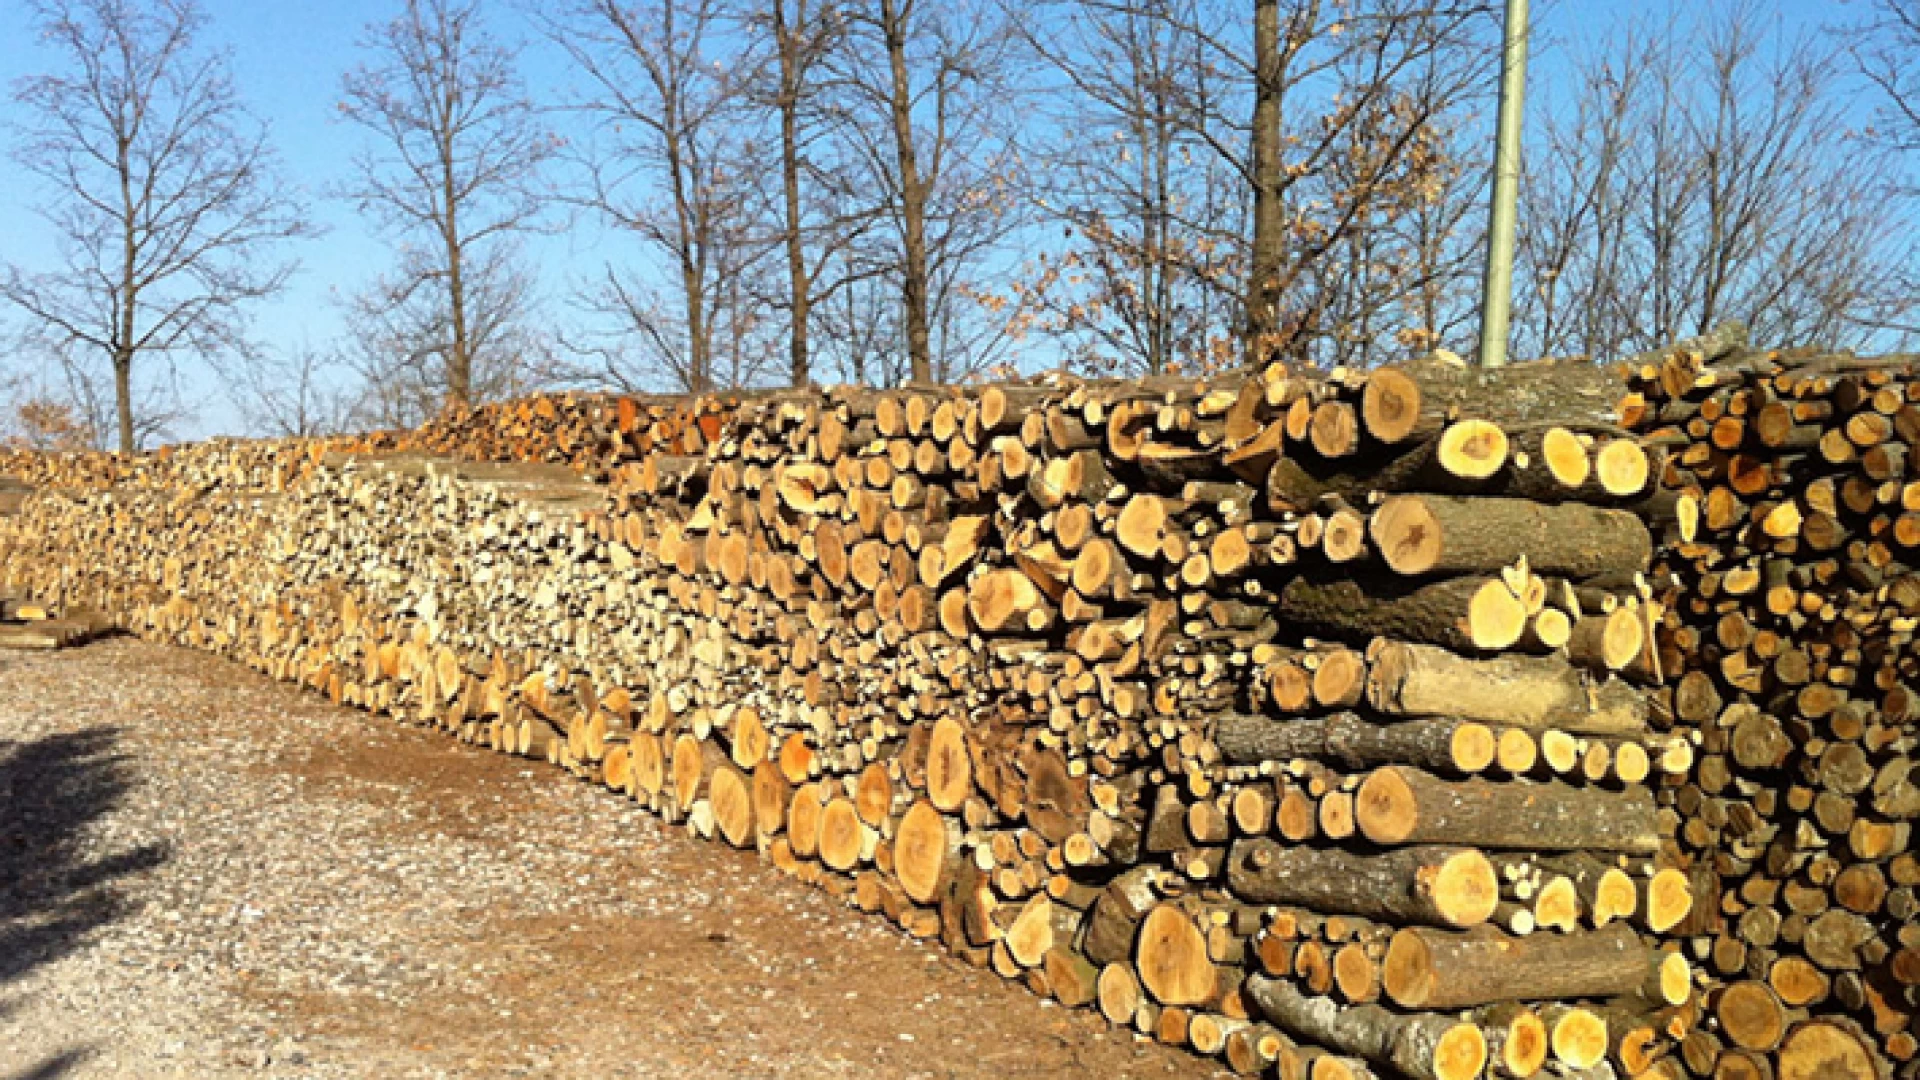 Colli a Volturno: il sindaco Incollingo emana un avviso per la richiesta di materiale legnoso ad uso civico.